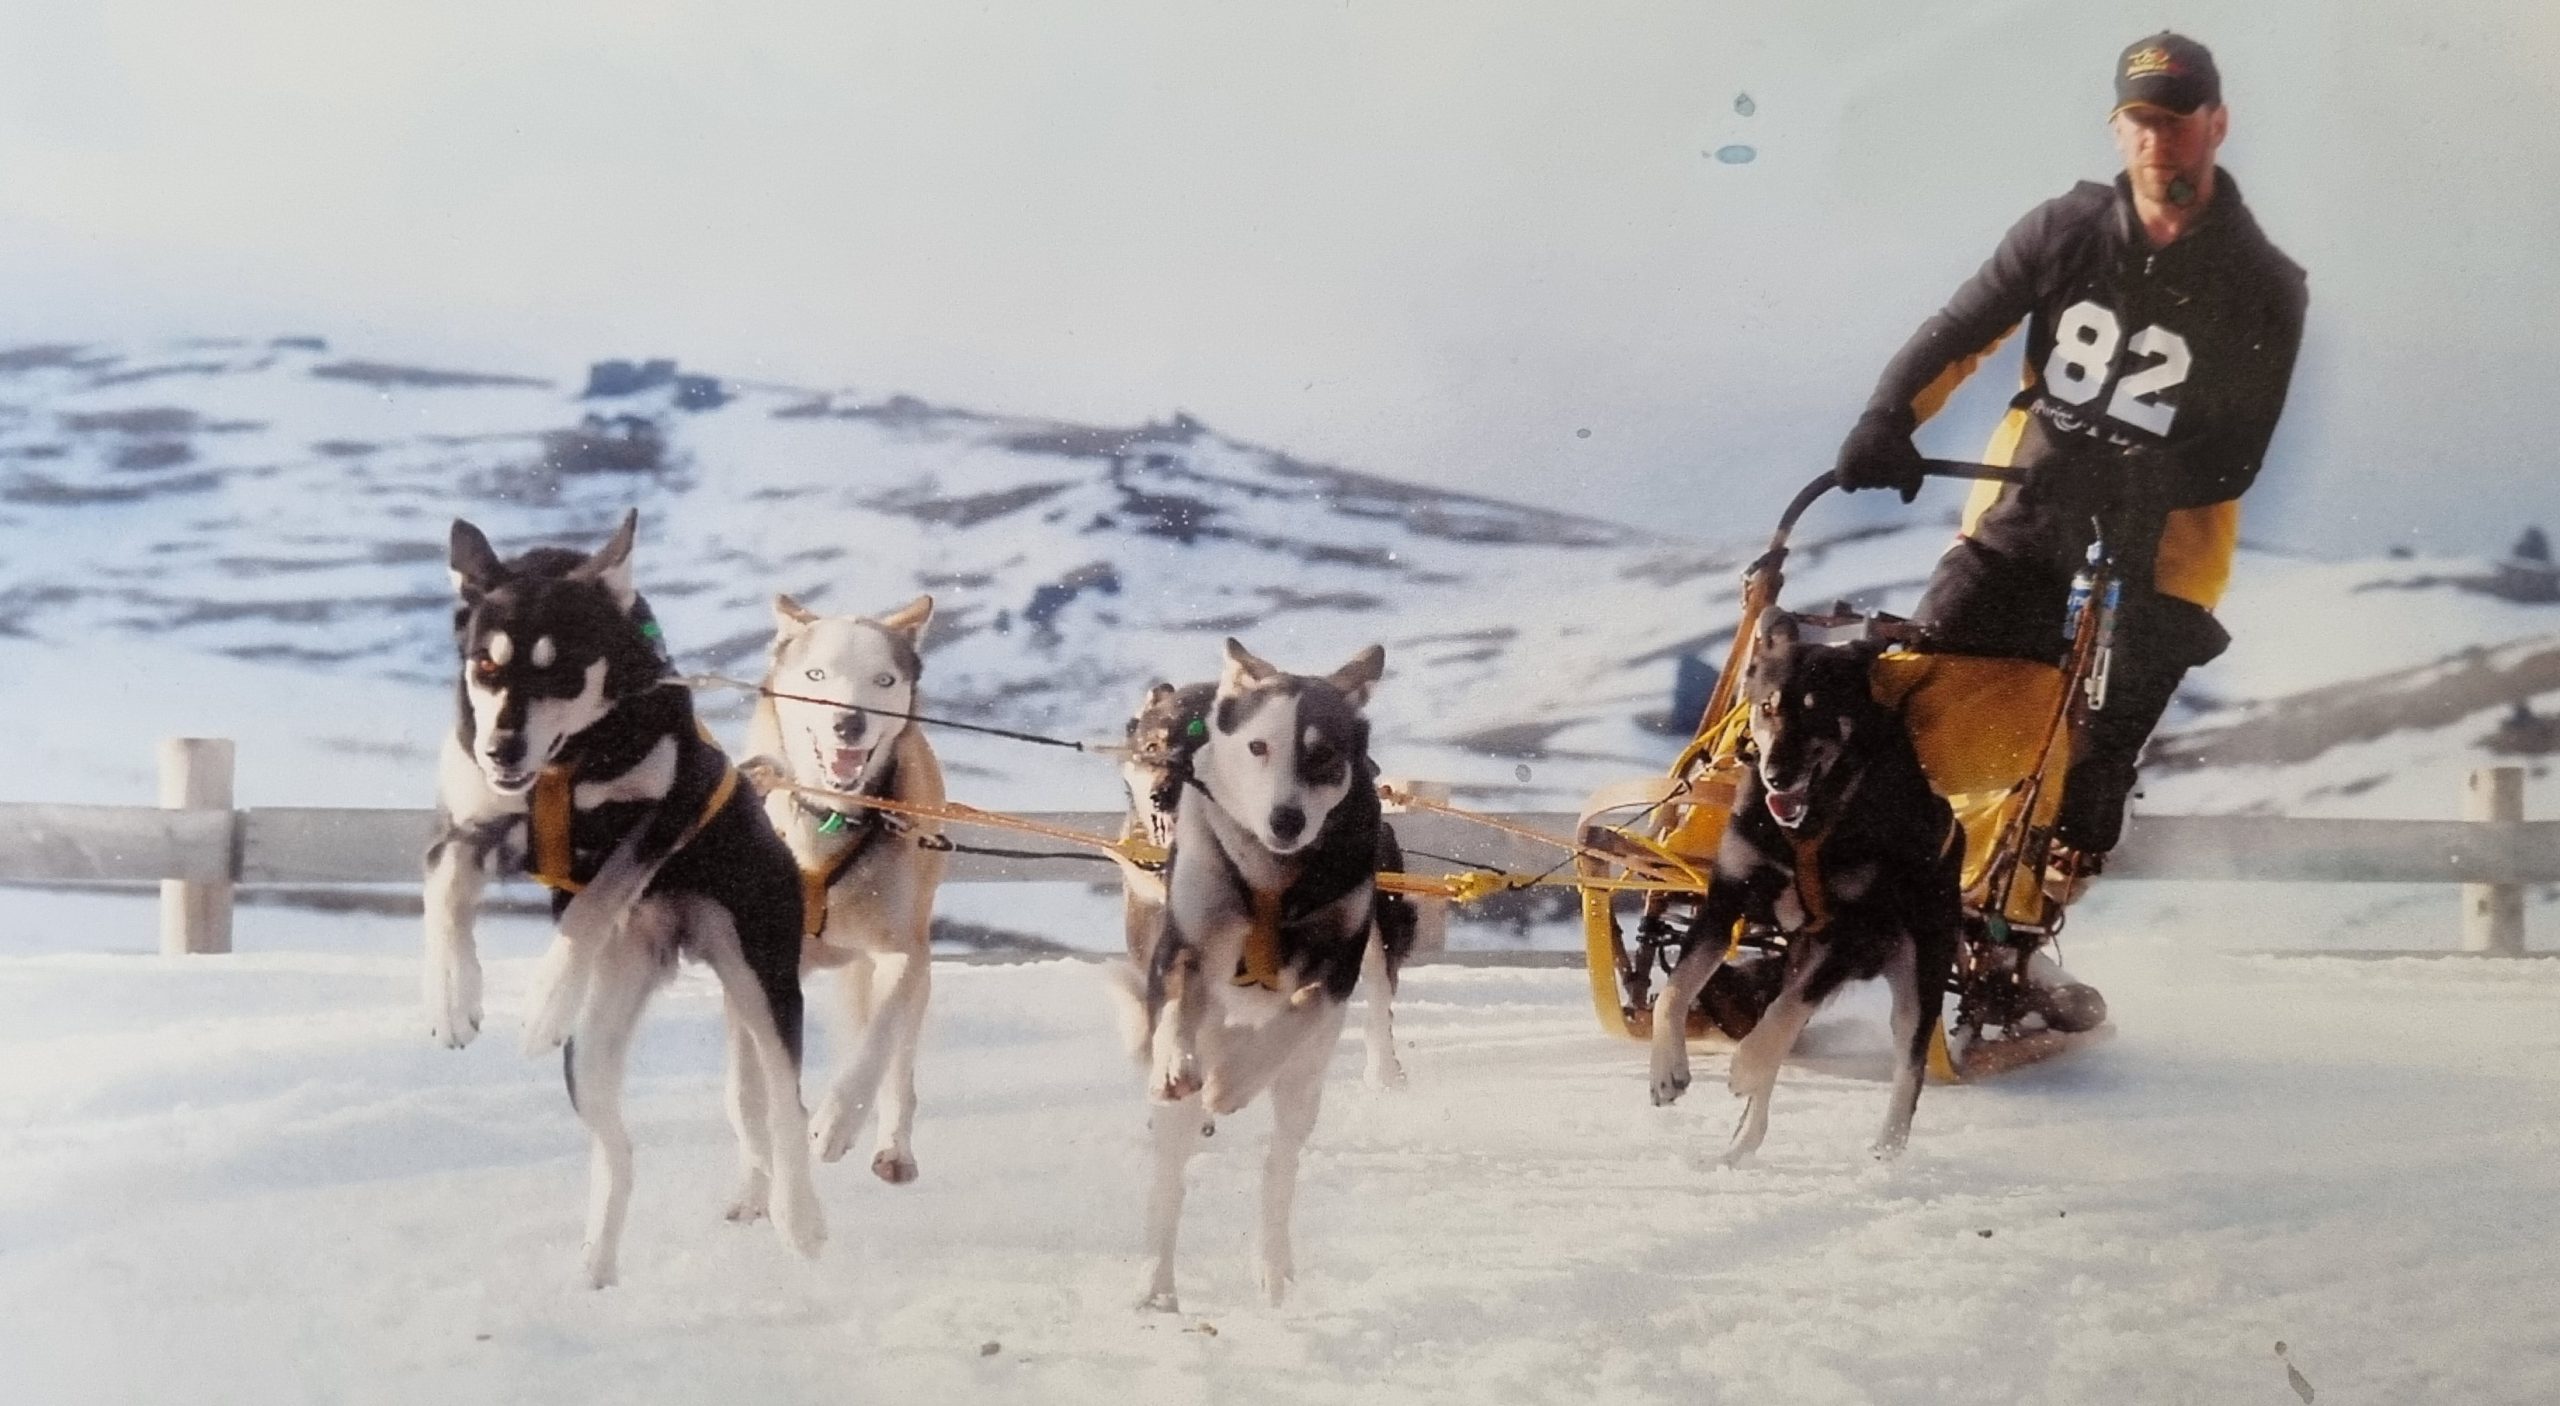 Tony Turner KJet mechanic sled dogs Snow Farm